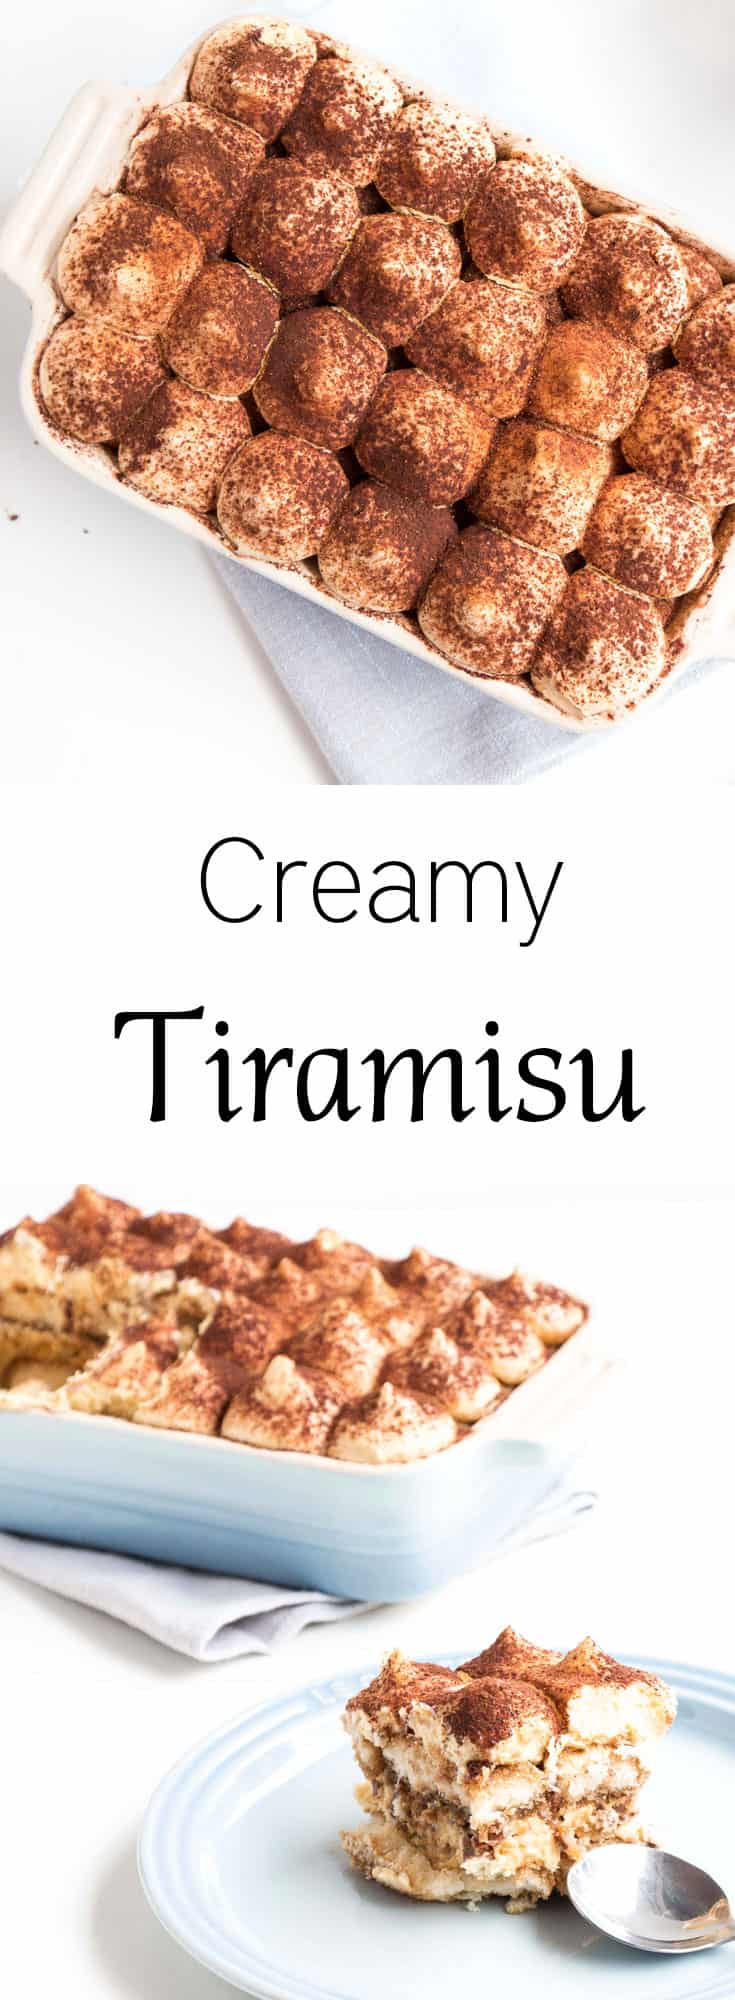 Creamy Tiramisu in a serving dish with recipe title.